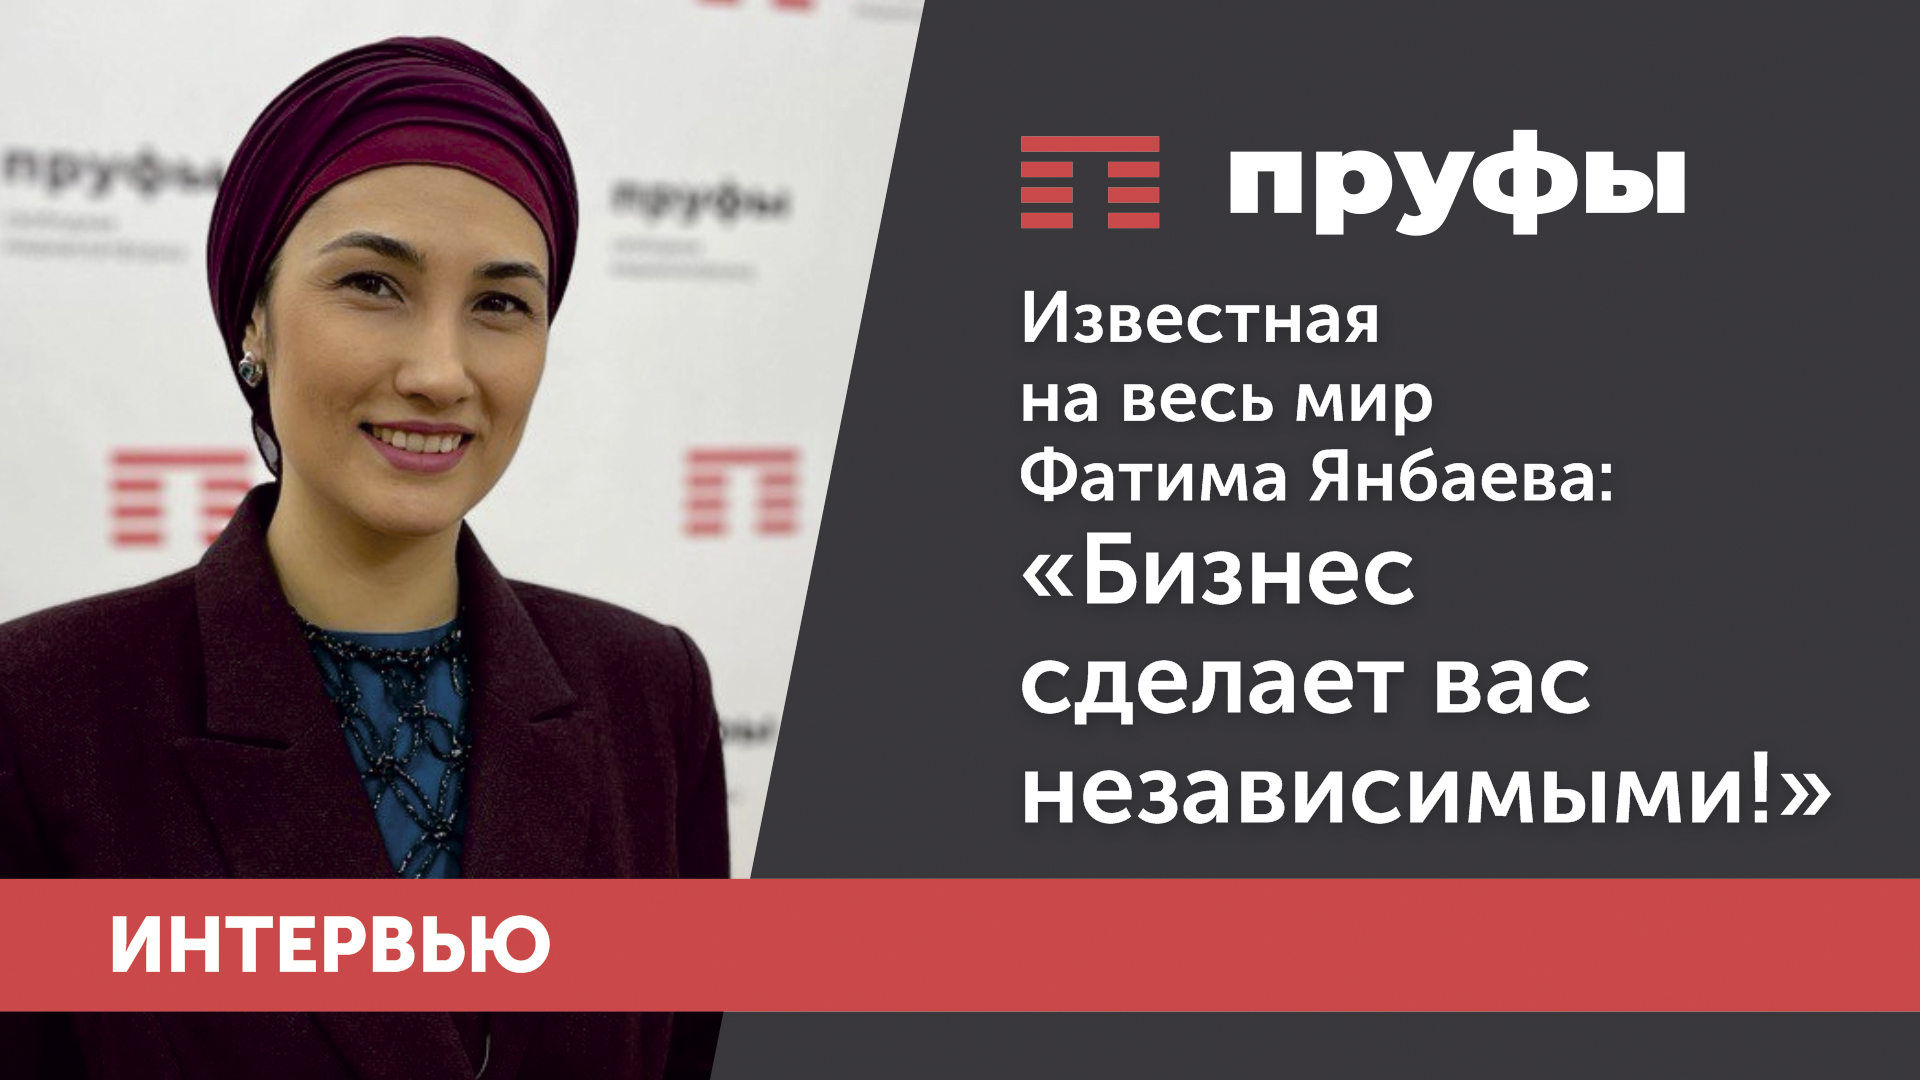 Известная на весь мир Фатима Янбаева: "Бизнес сделает вас независимыми!"